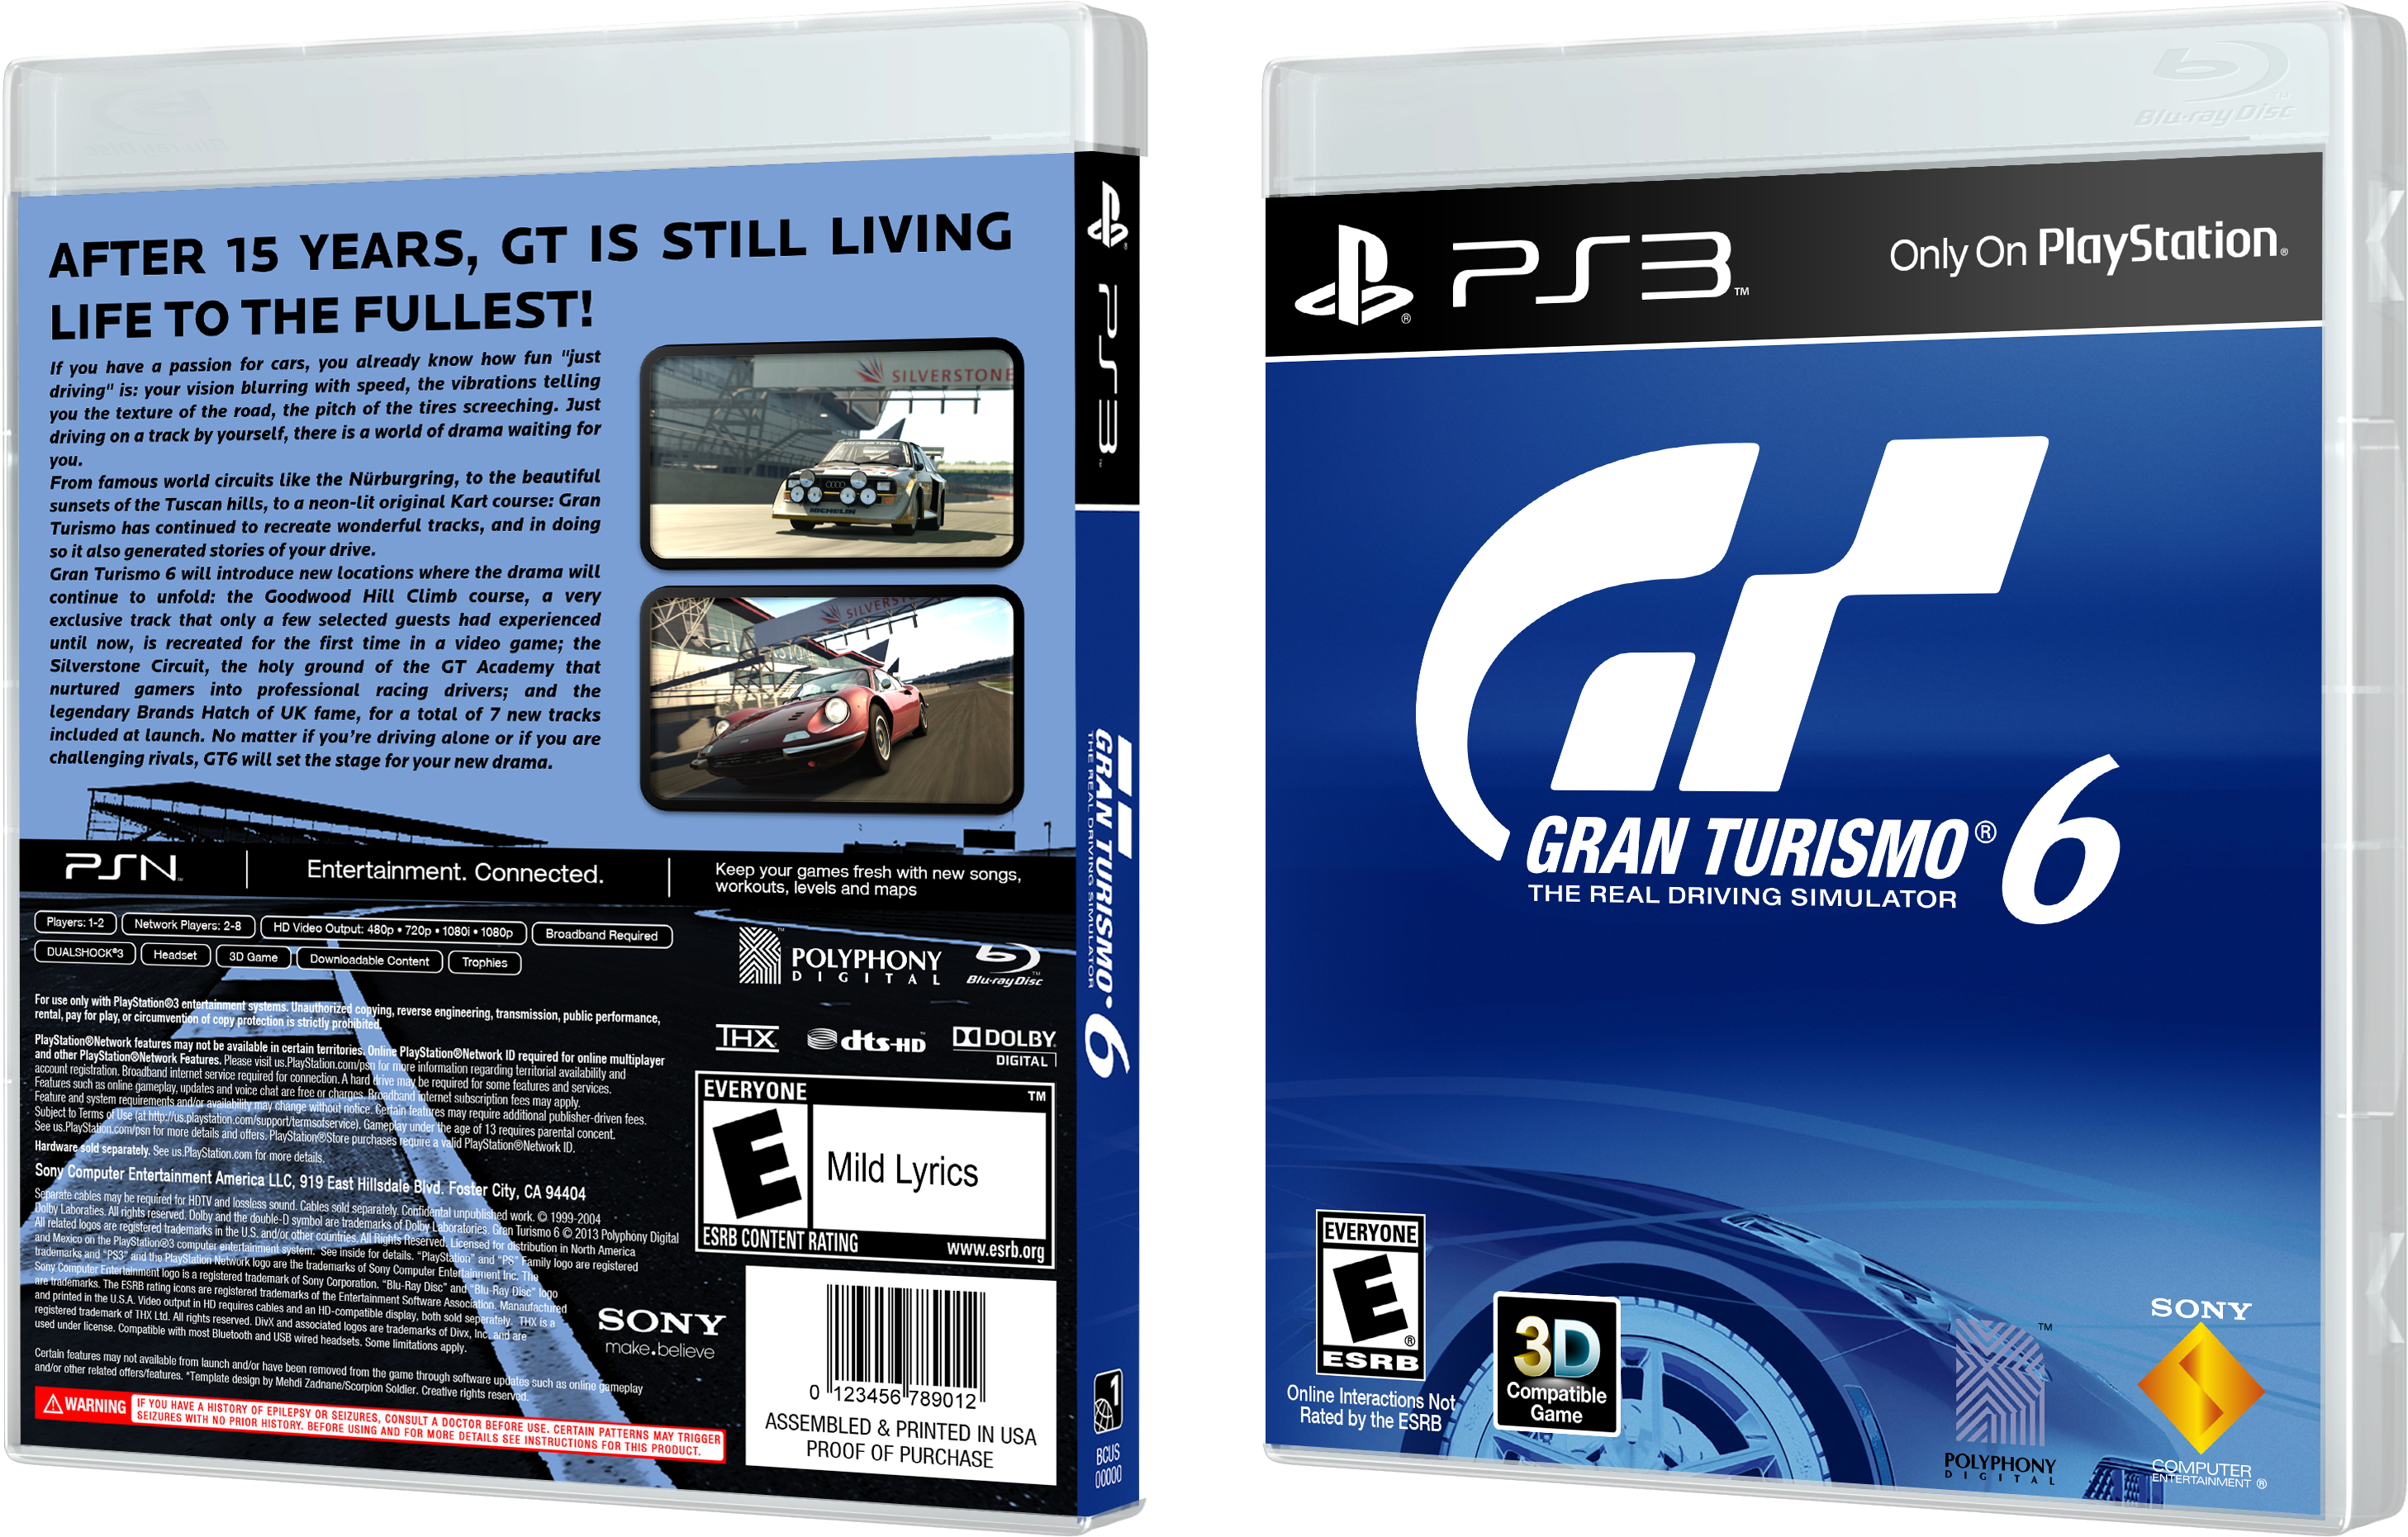 Ps3 Gran Turismo 6 R1/all - Gran Turismo 6 Ps3 Box (3046x1929), Png Download